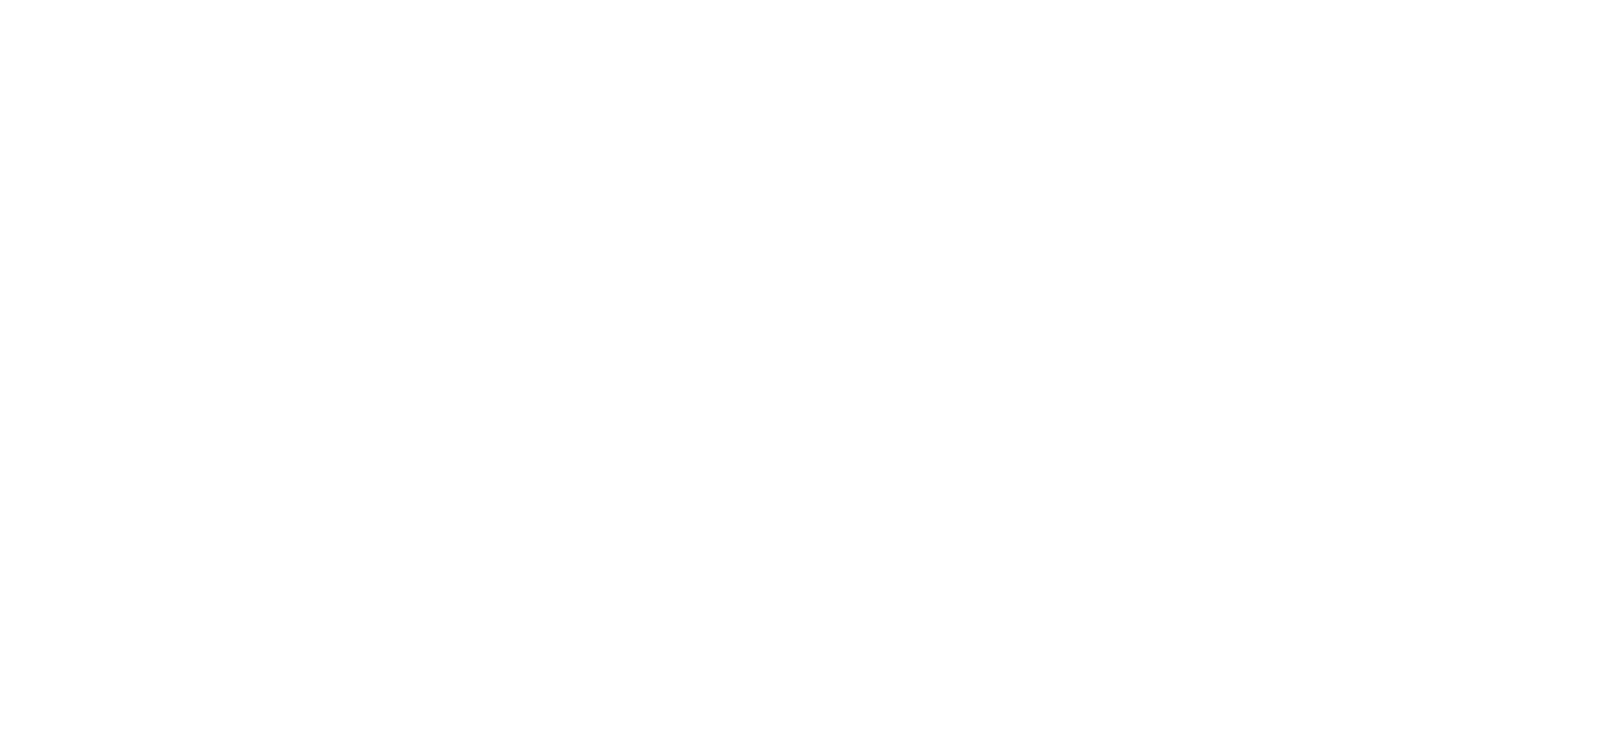 上海浦东新区惠立学校logo透明